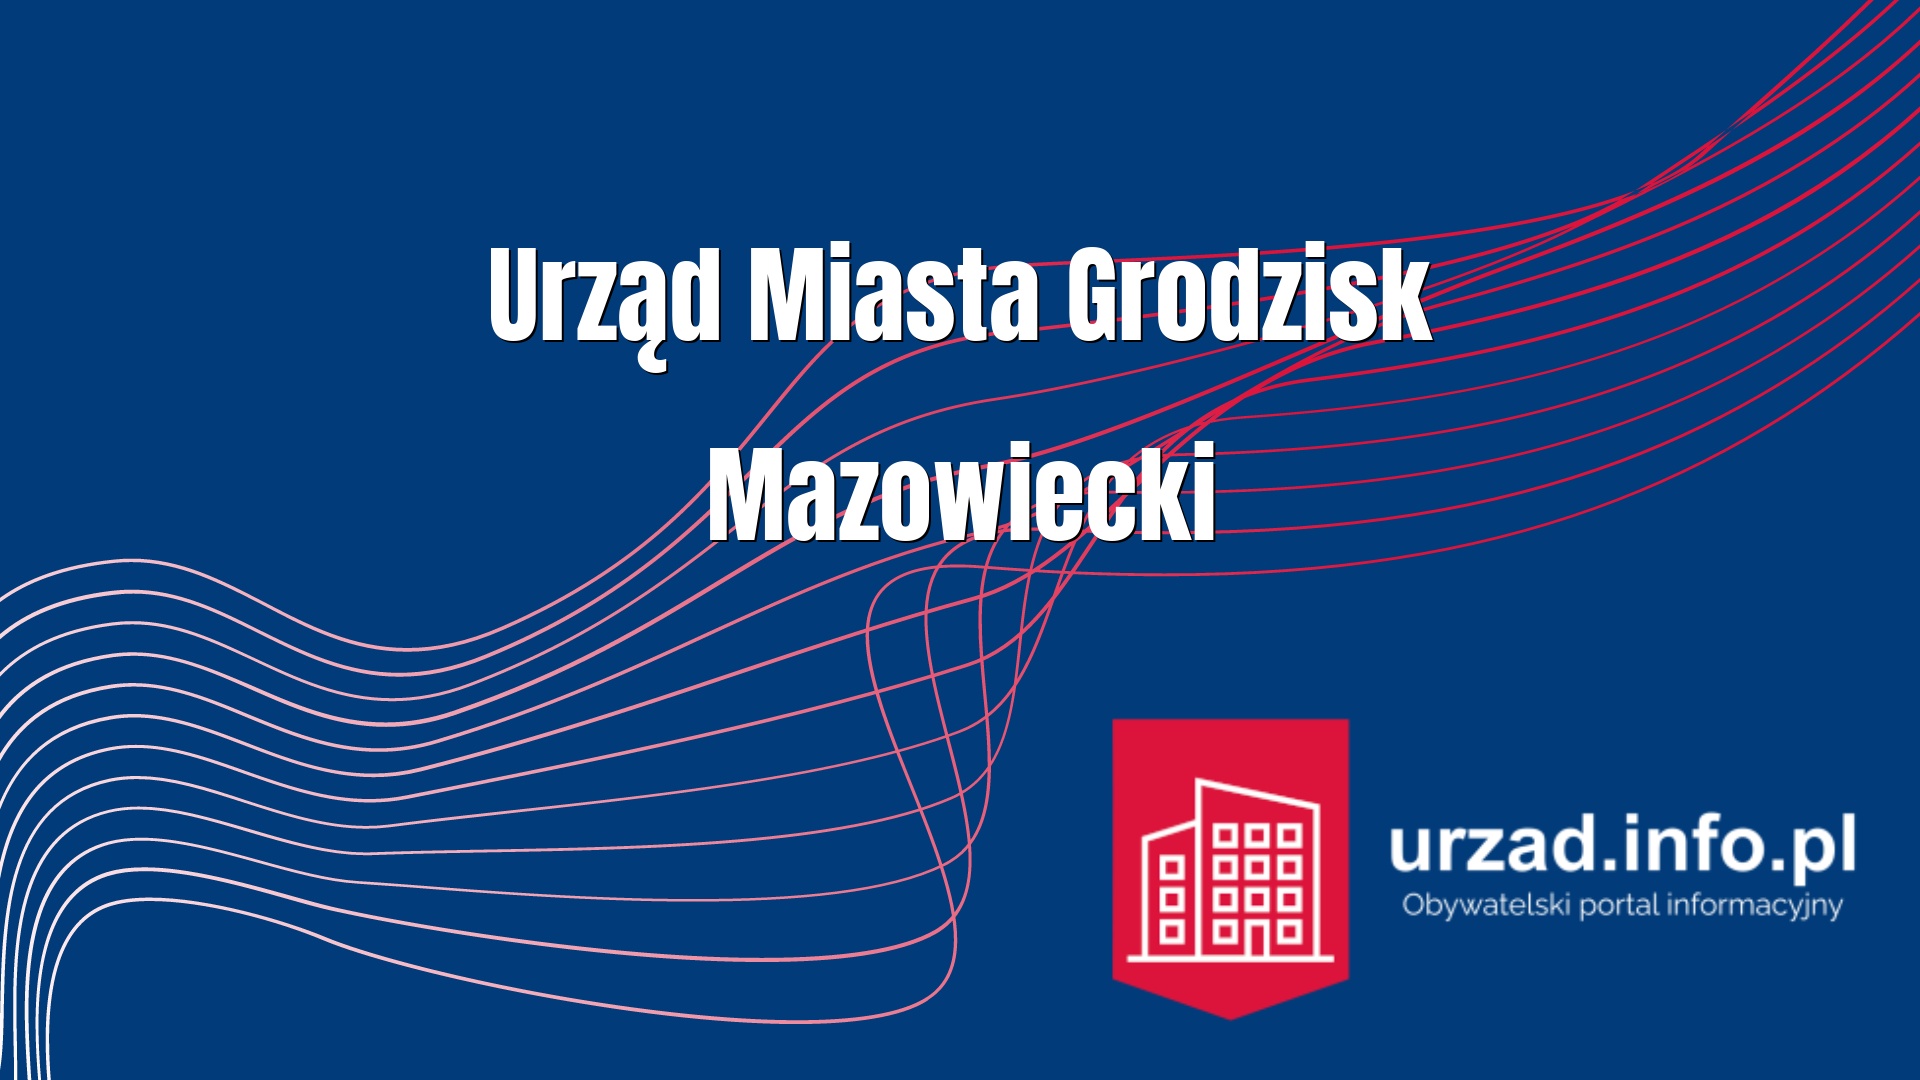 Urząd Miasta Grodzisk Mazowiecki